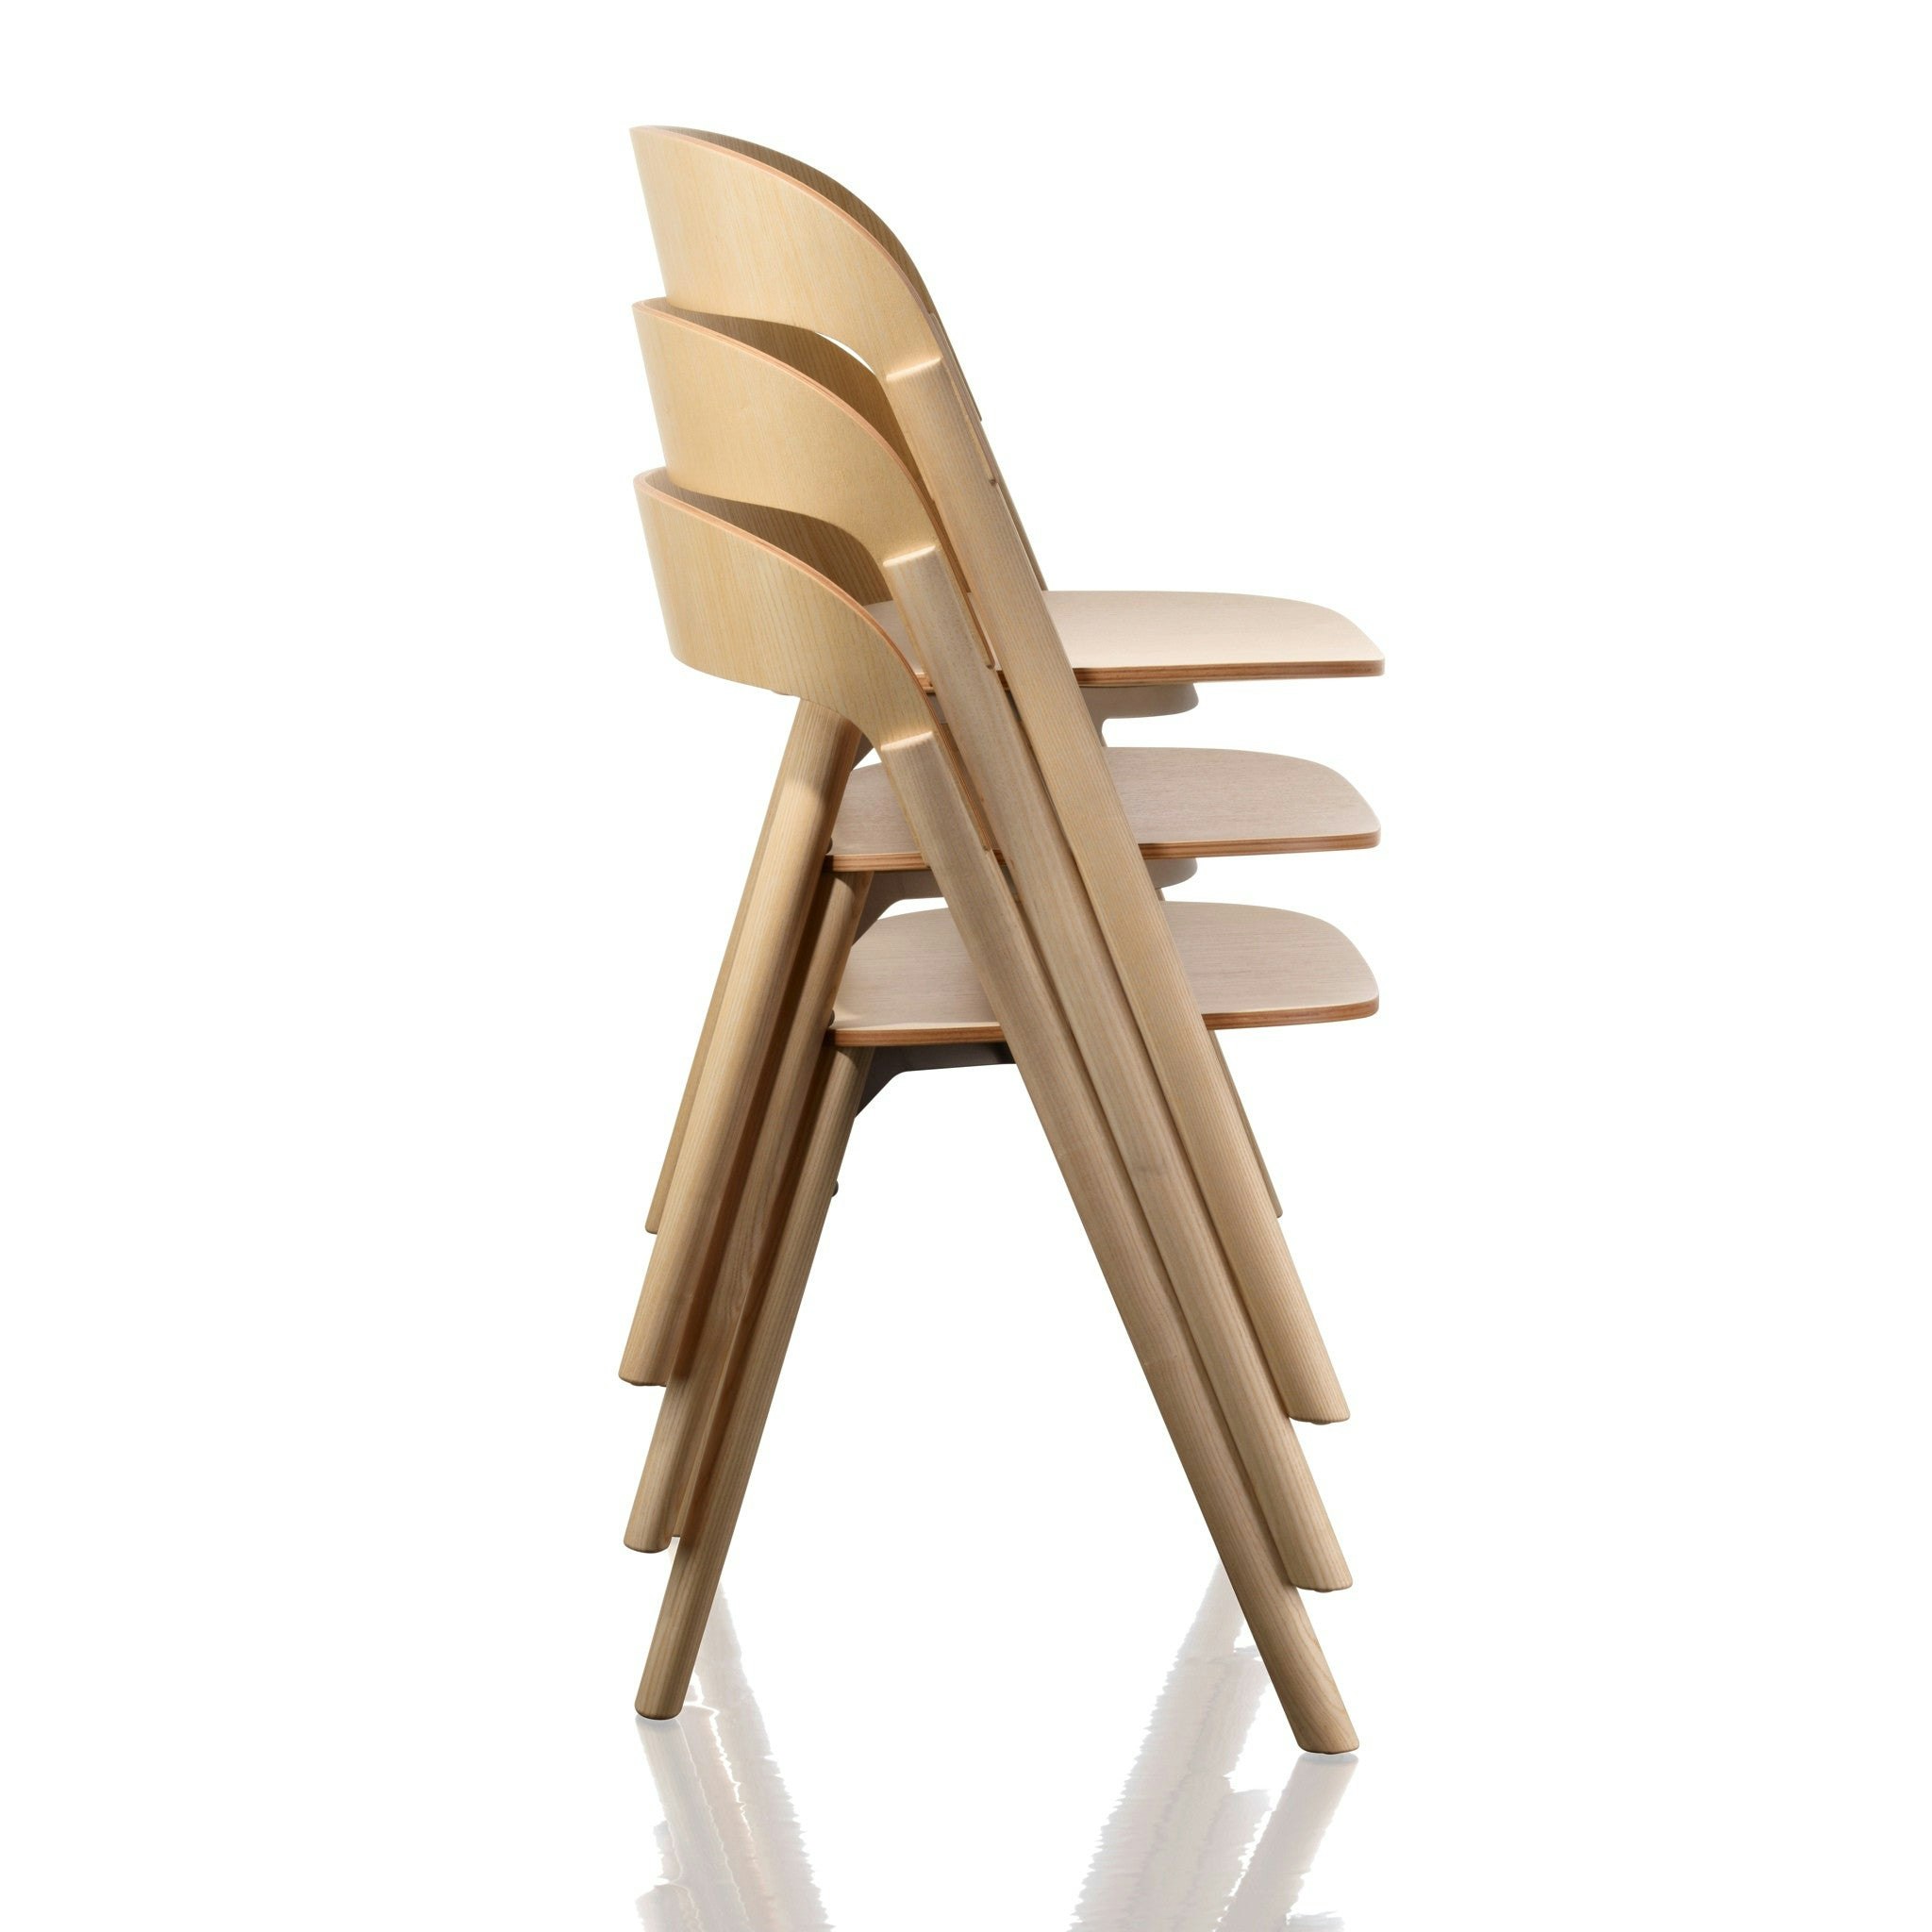 Pila Chair by Magis